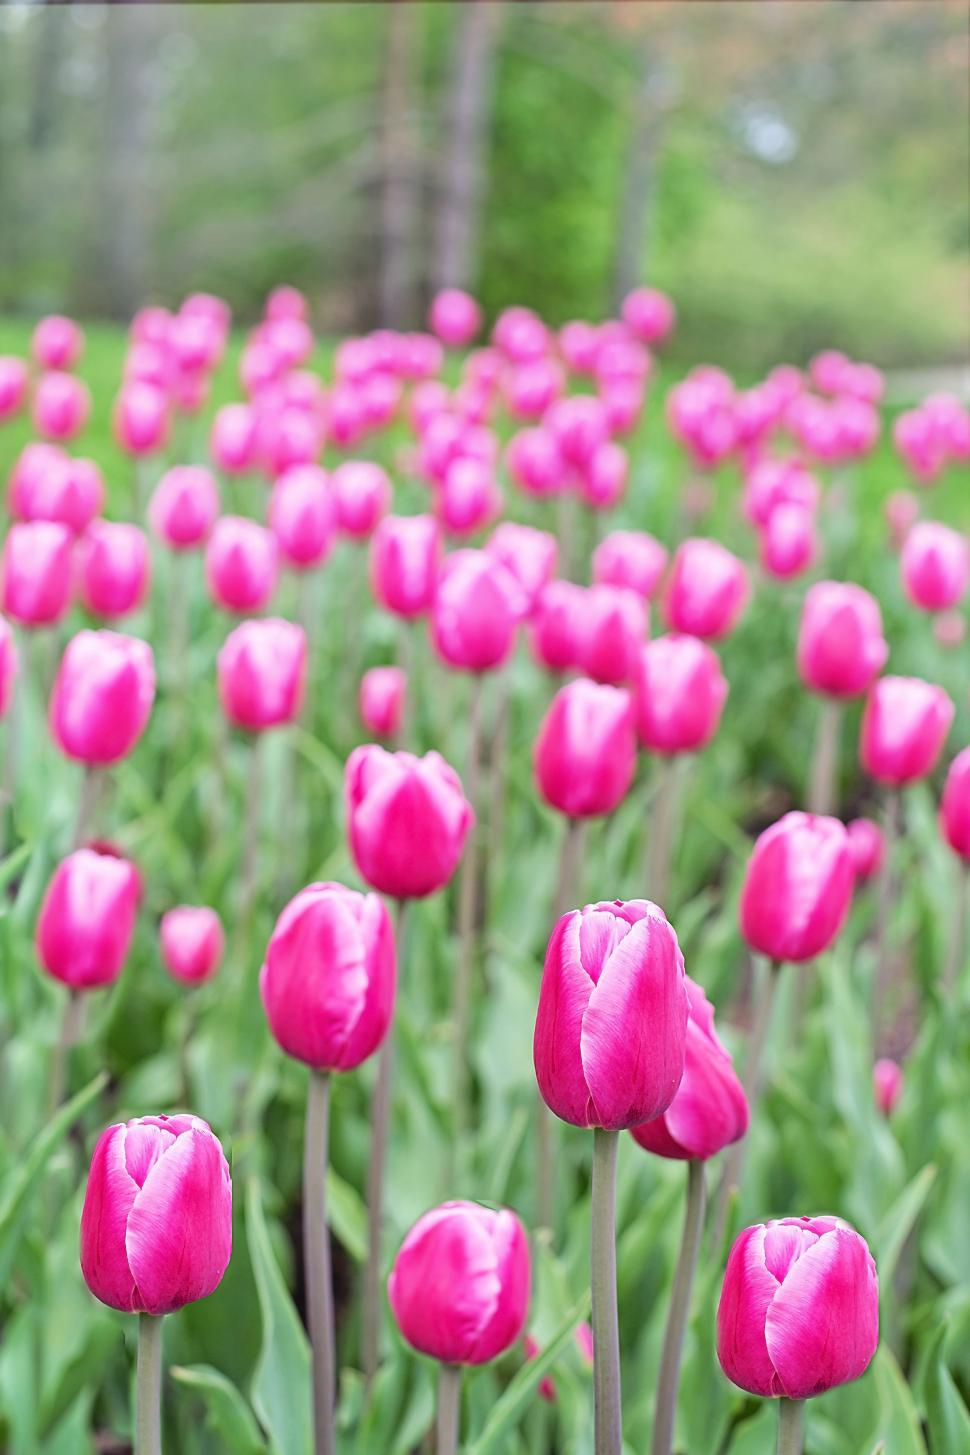 Free Image of Pink Tulip Garden 